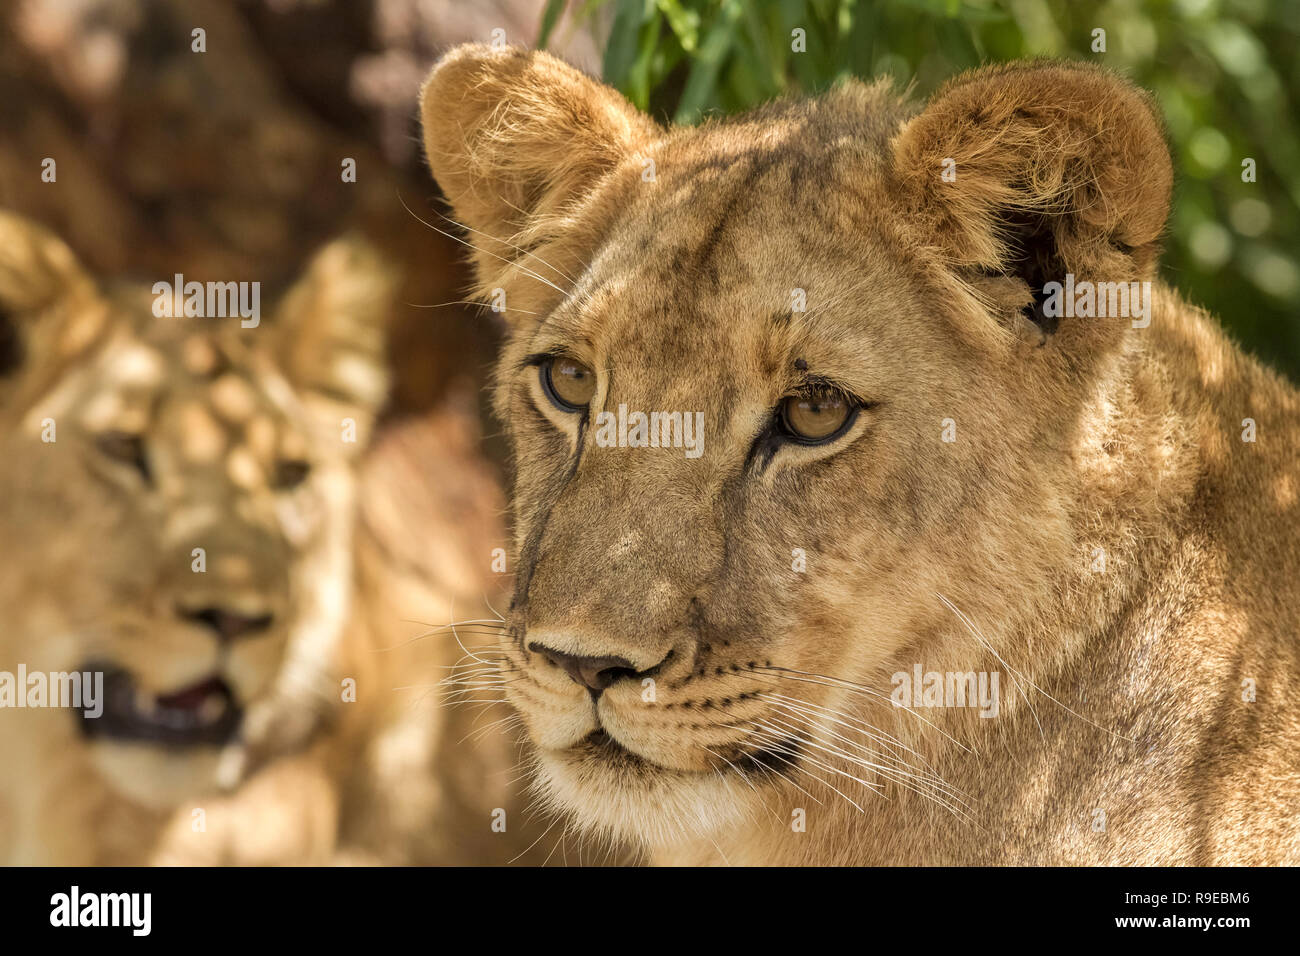 2 Giovani leoni giacenti in ombra cercando vigili e interessati Foto Stock